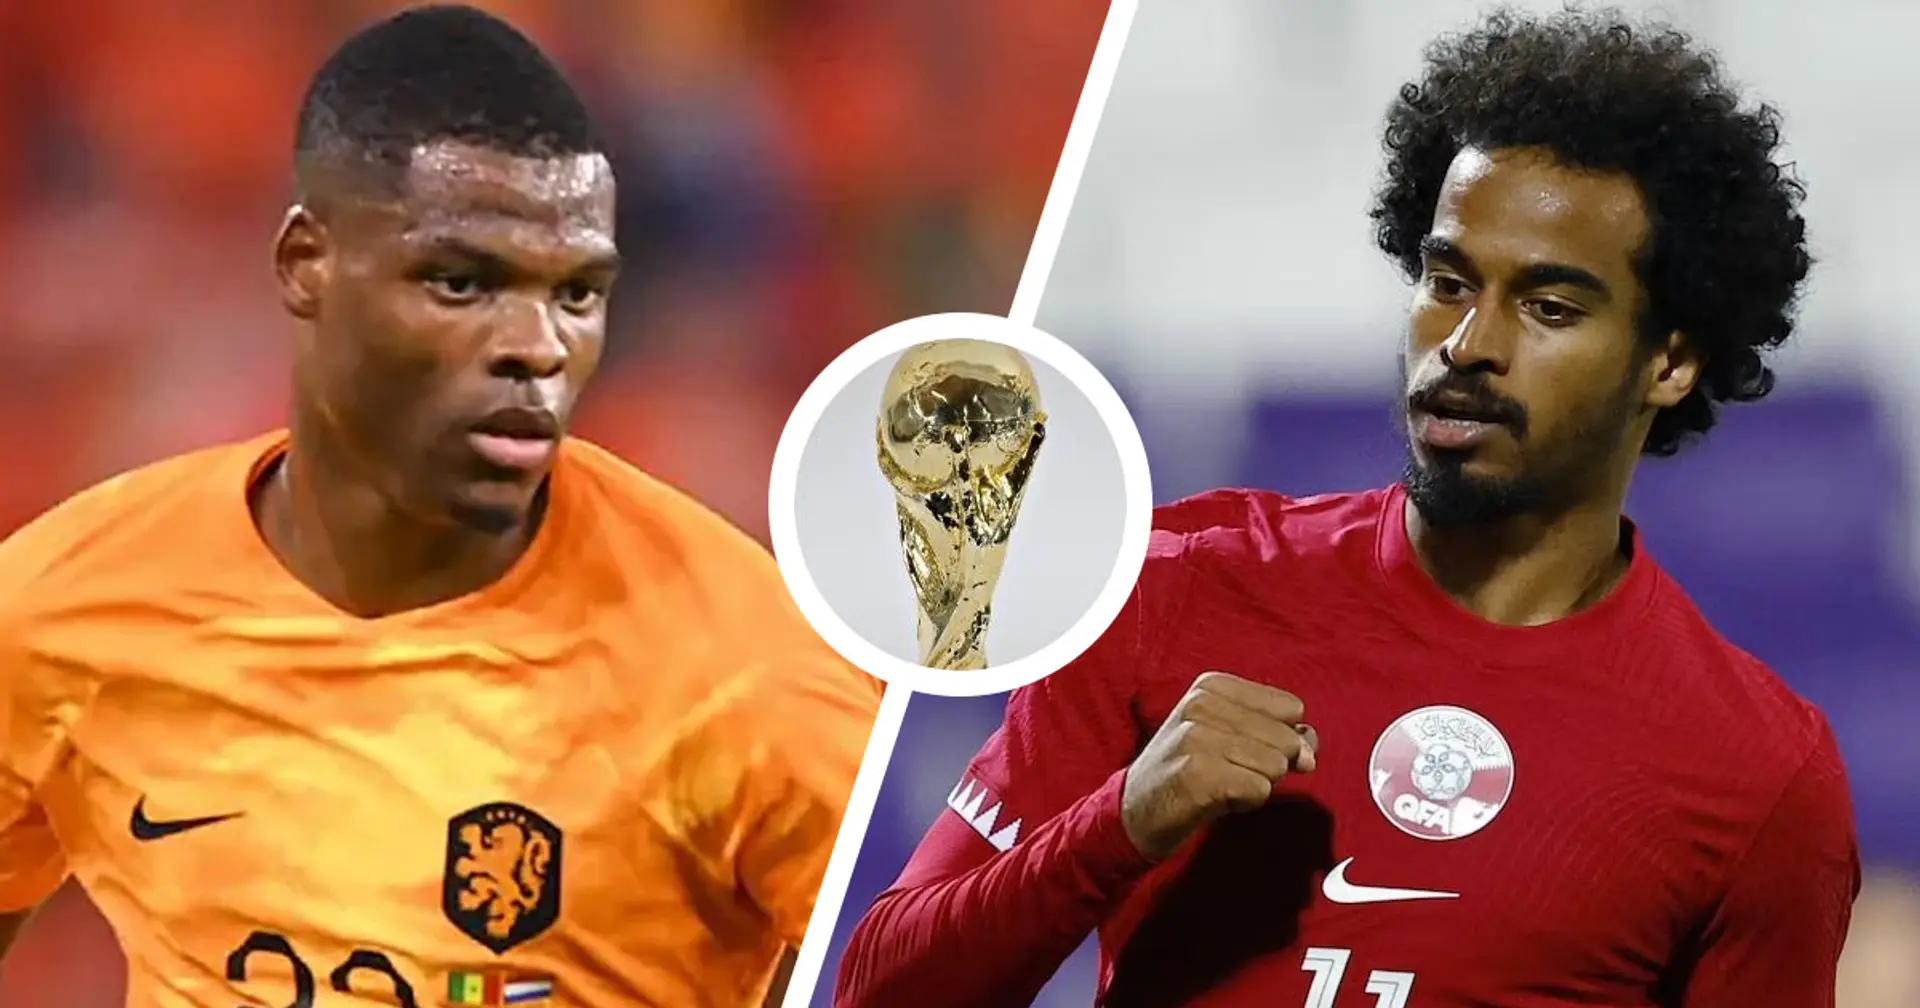 Olanda vs Qatar: le formazioni ufficiali delle squadre per la partita della Coppa del Mondo Qatar 2022